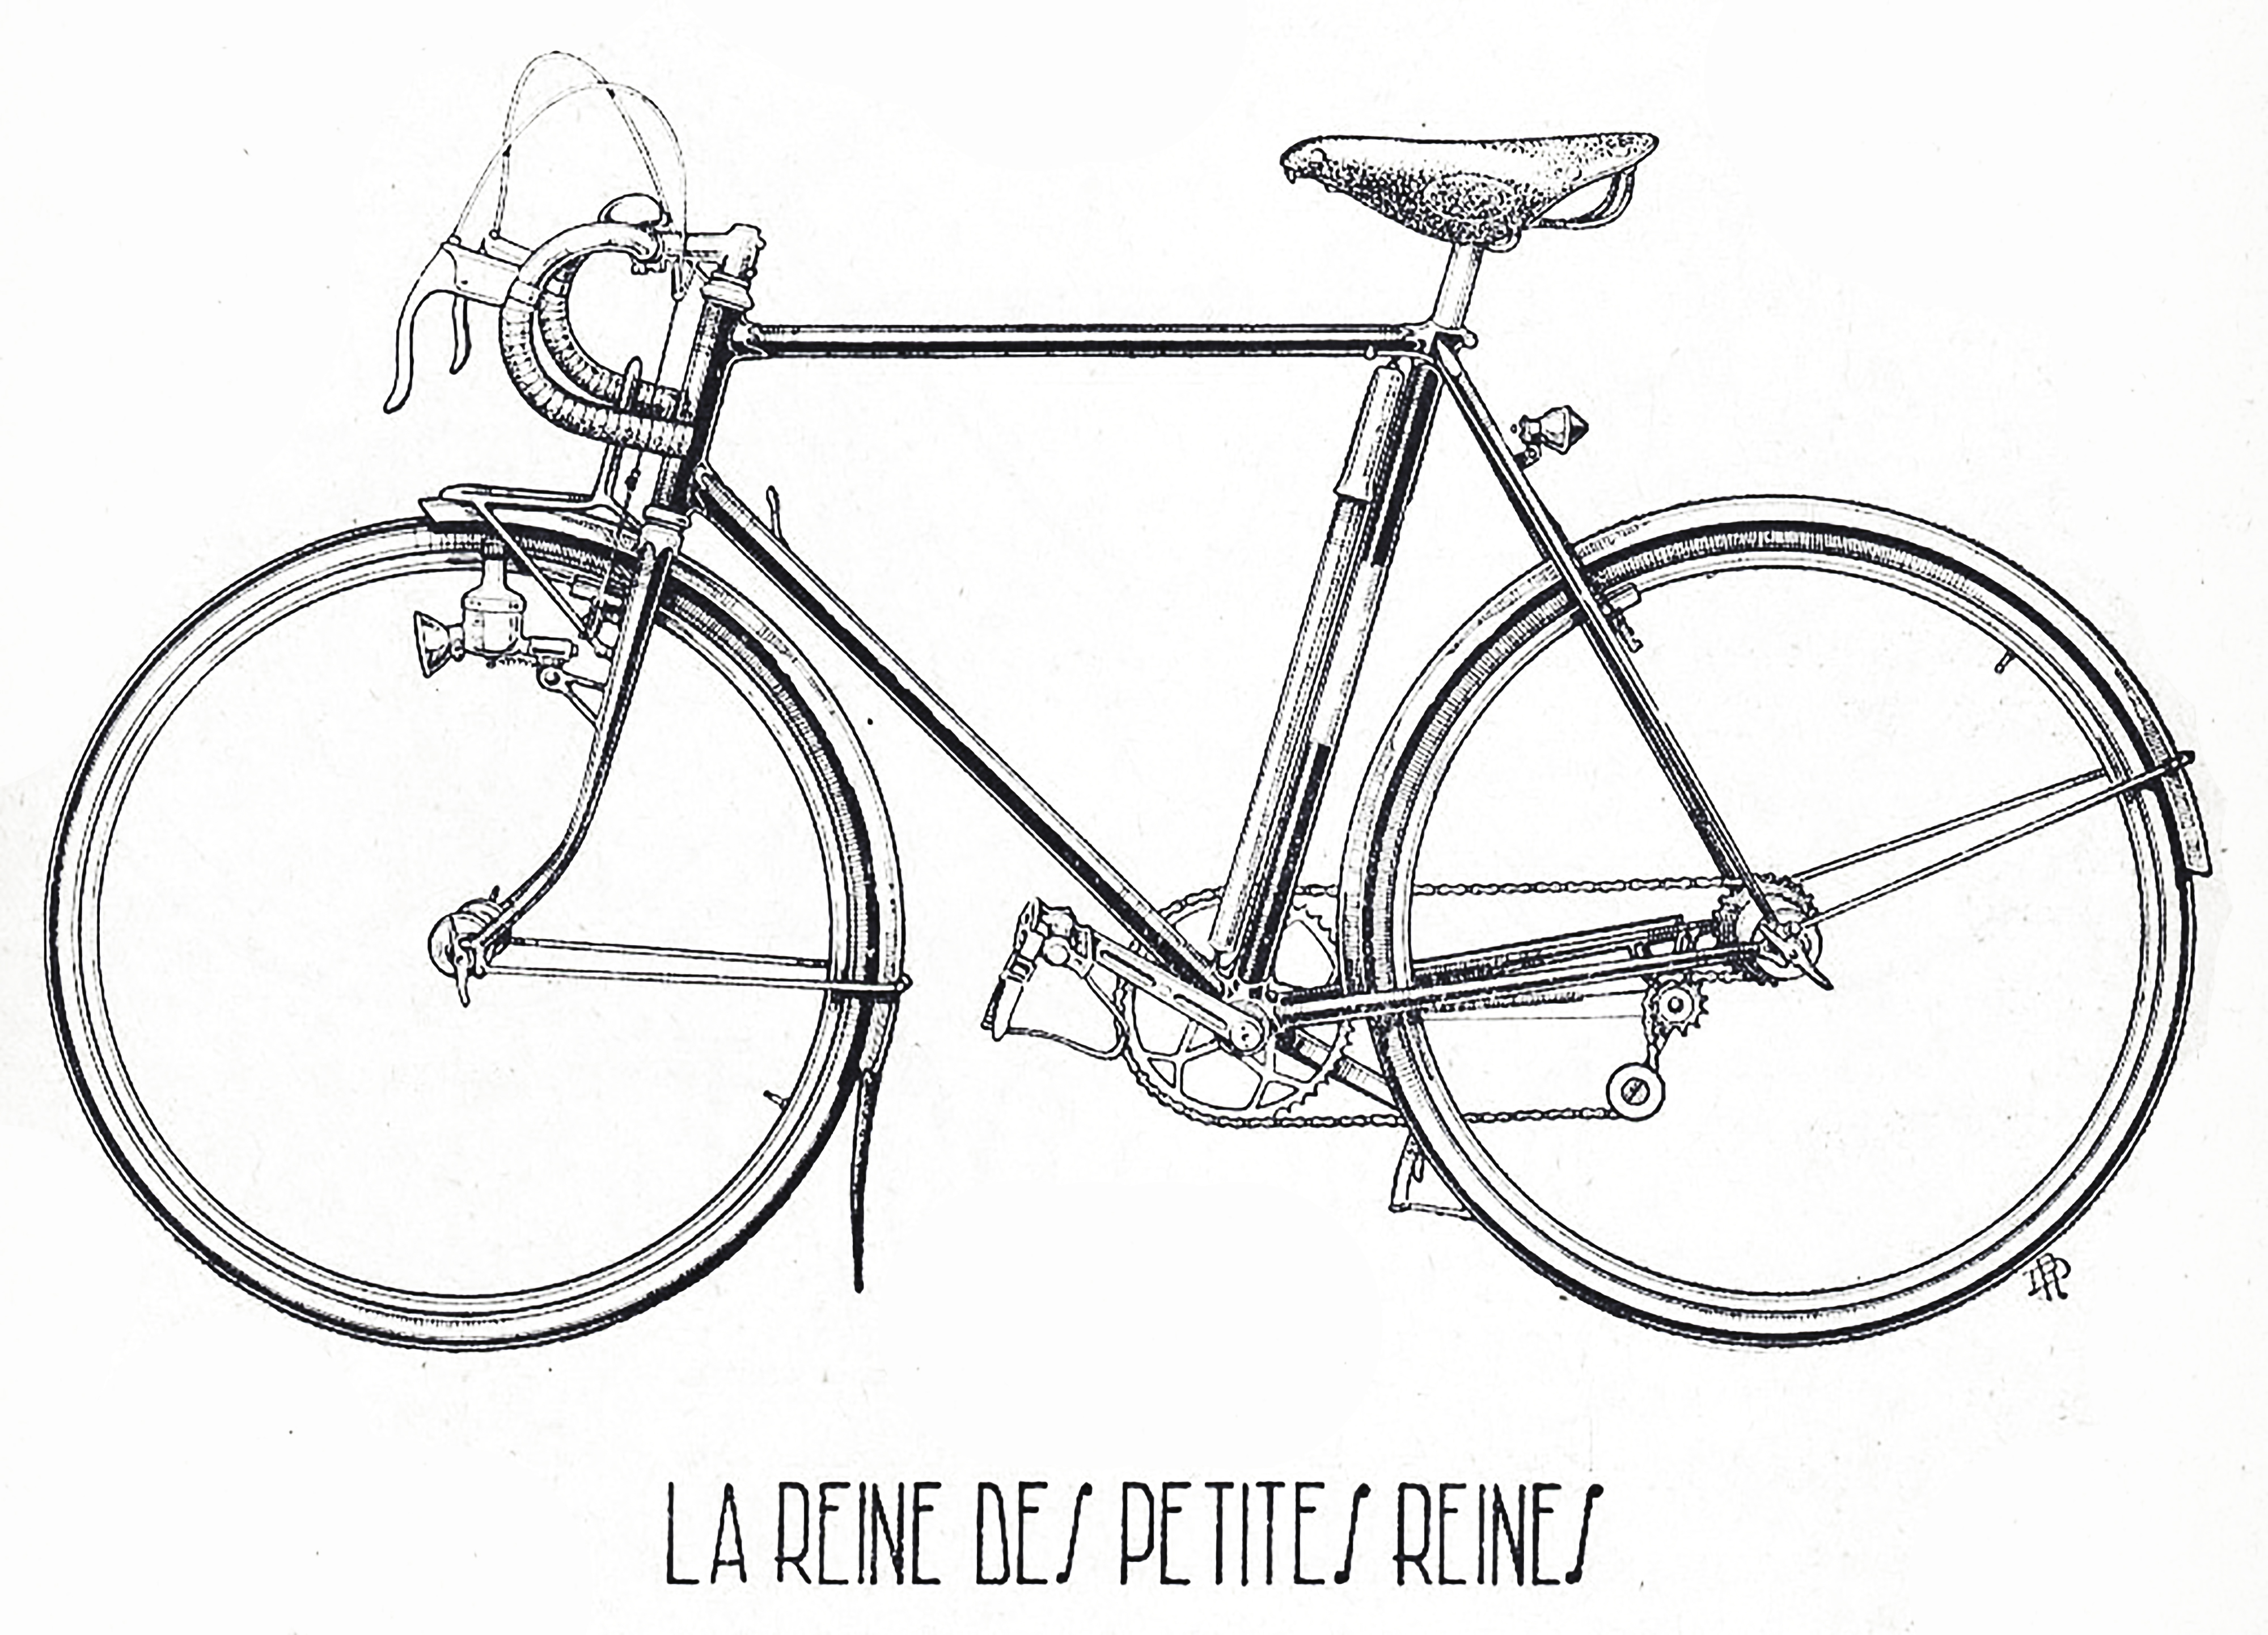 ebykr-cycles-alex-singer-la-reine-des-petites-reines-1950-1951-catalog